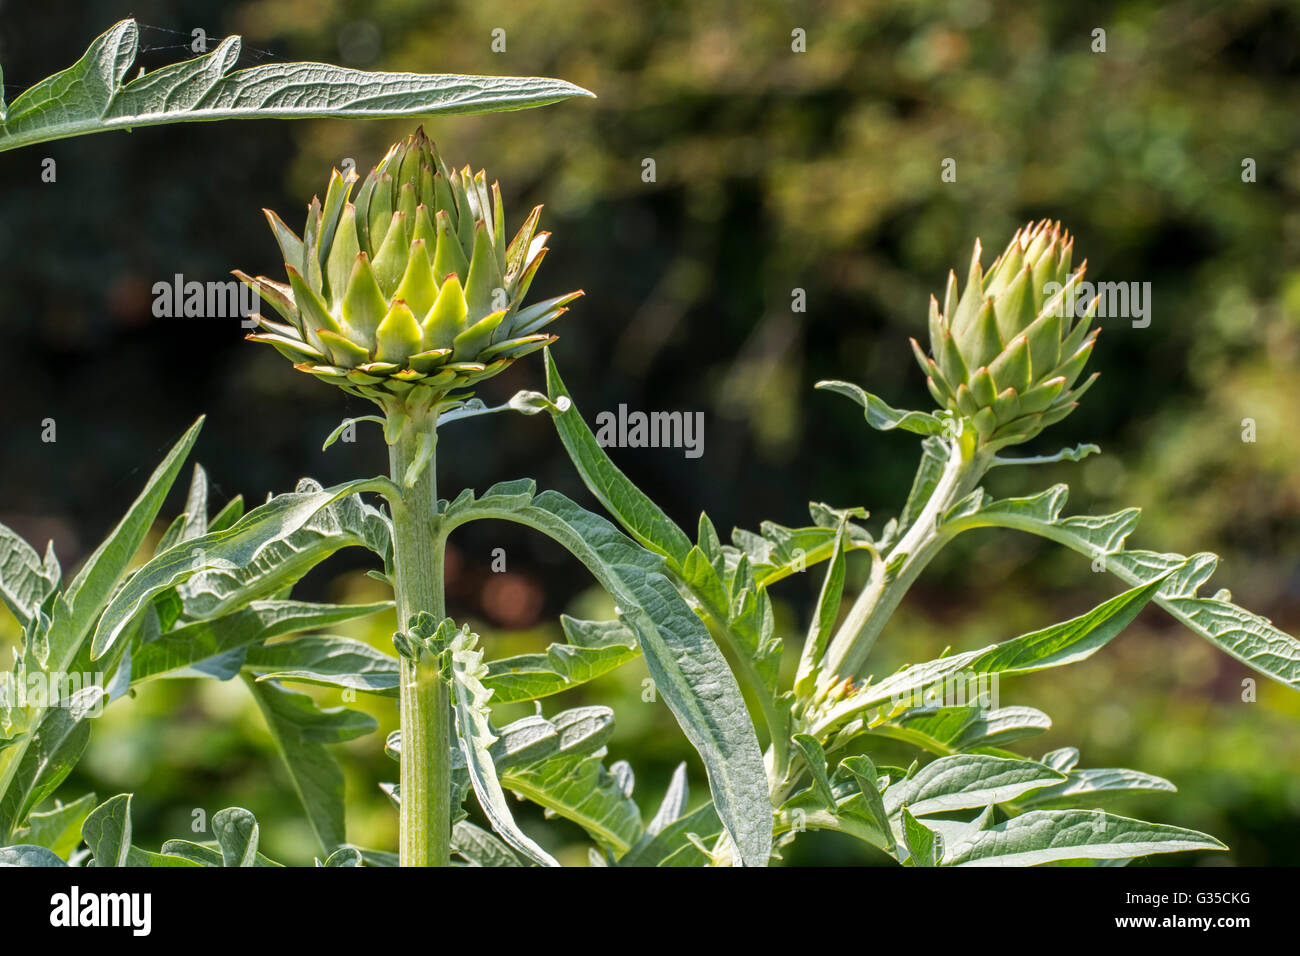 Artichaut (Cynara cardunculus var. scolymus / Cynara scolymus) close up de feuilles et bourgeons de fleurs comestibles Banque D'Images